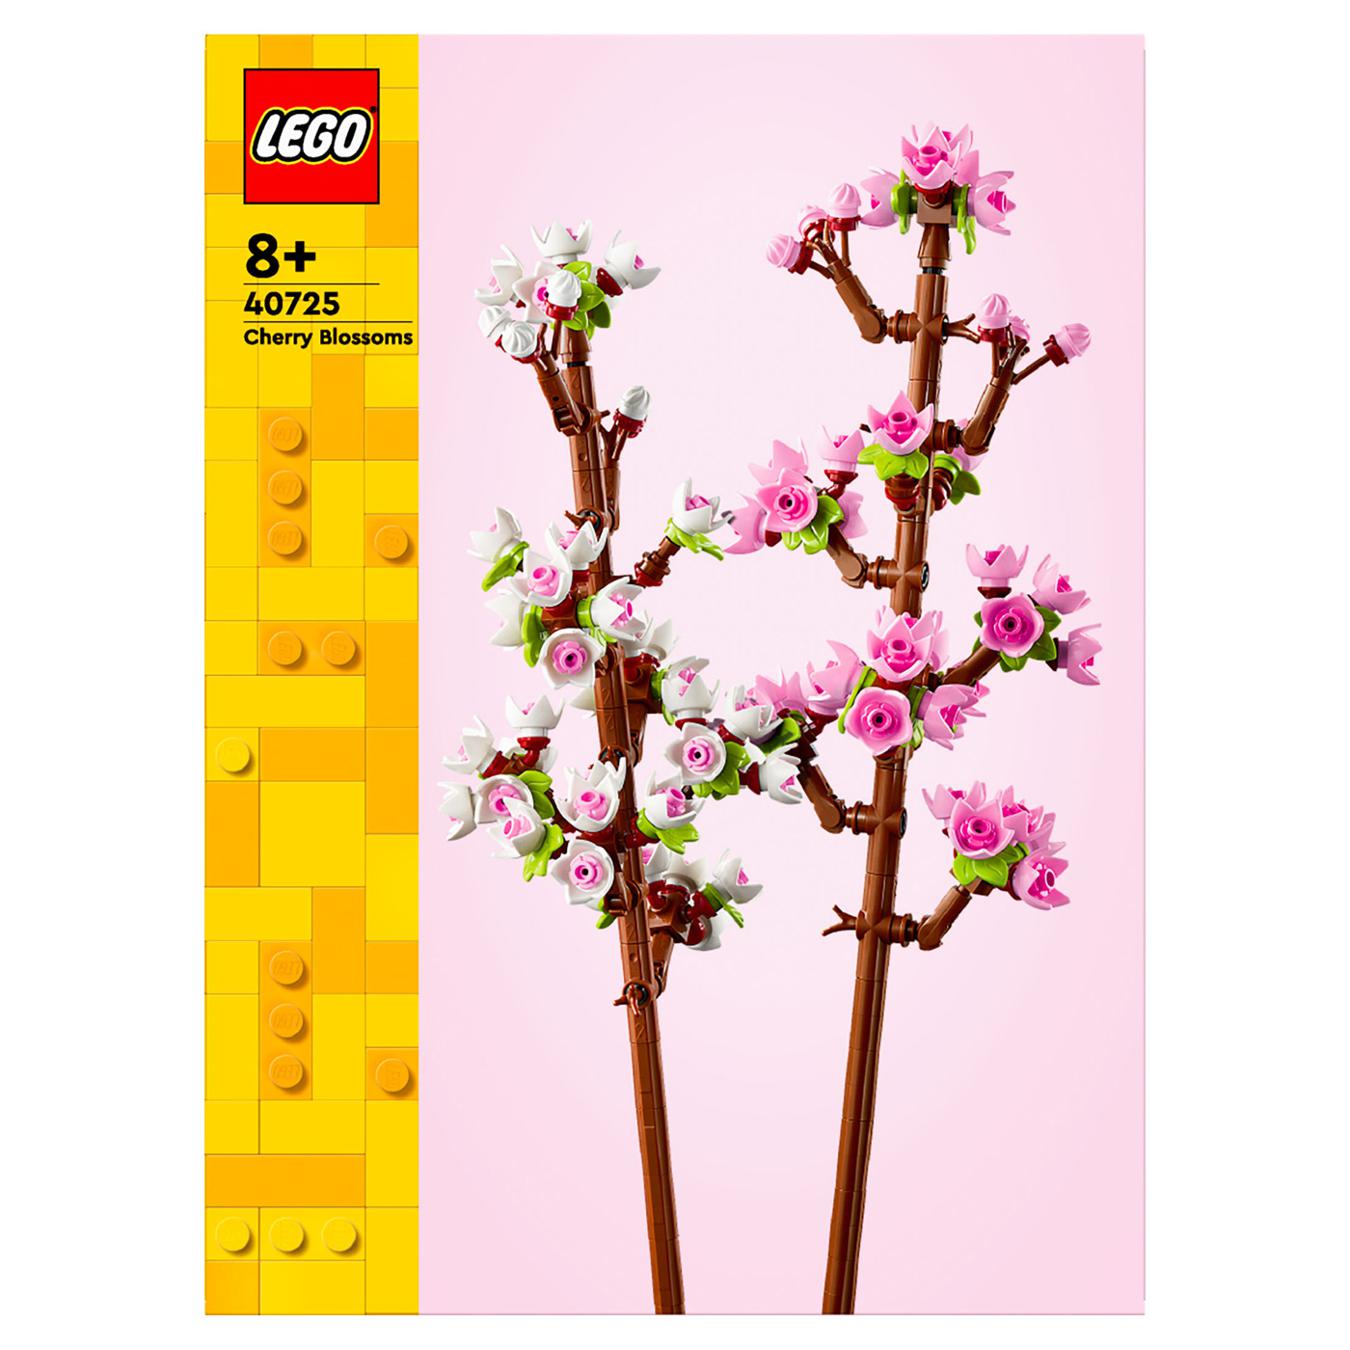 Constructor LEGO 40725 Cherry blossom